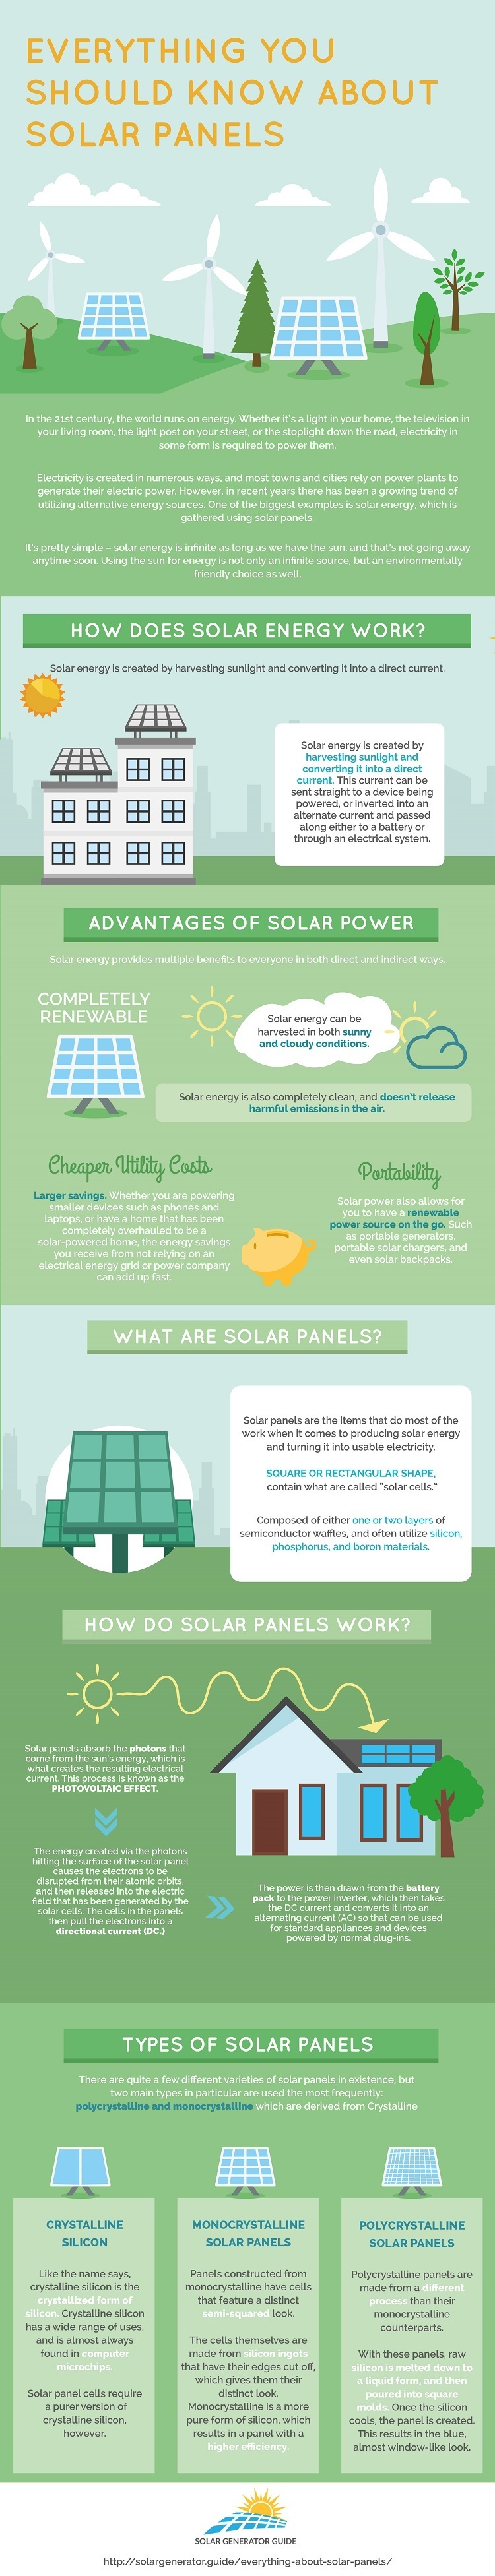 Solar Panels 101 Guide